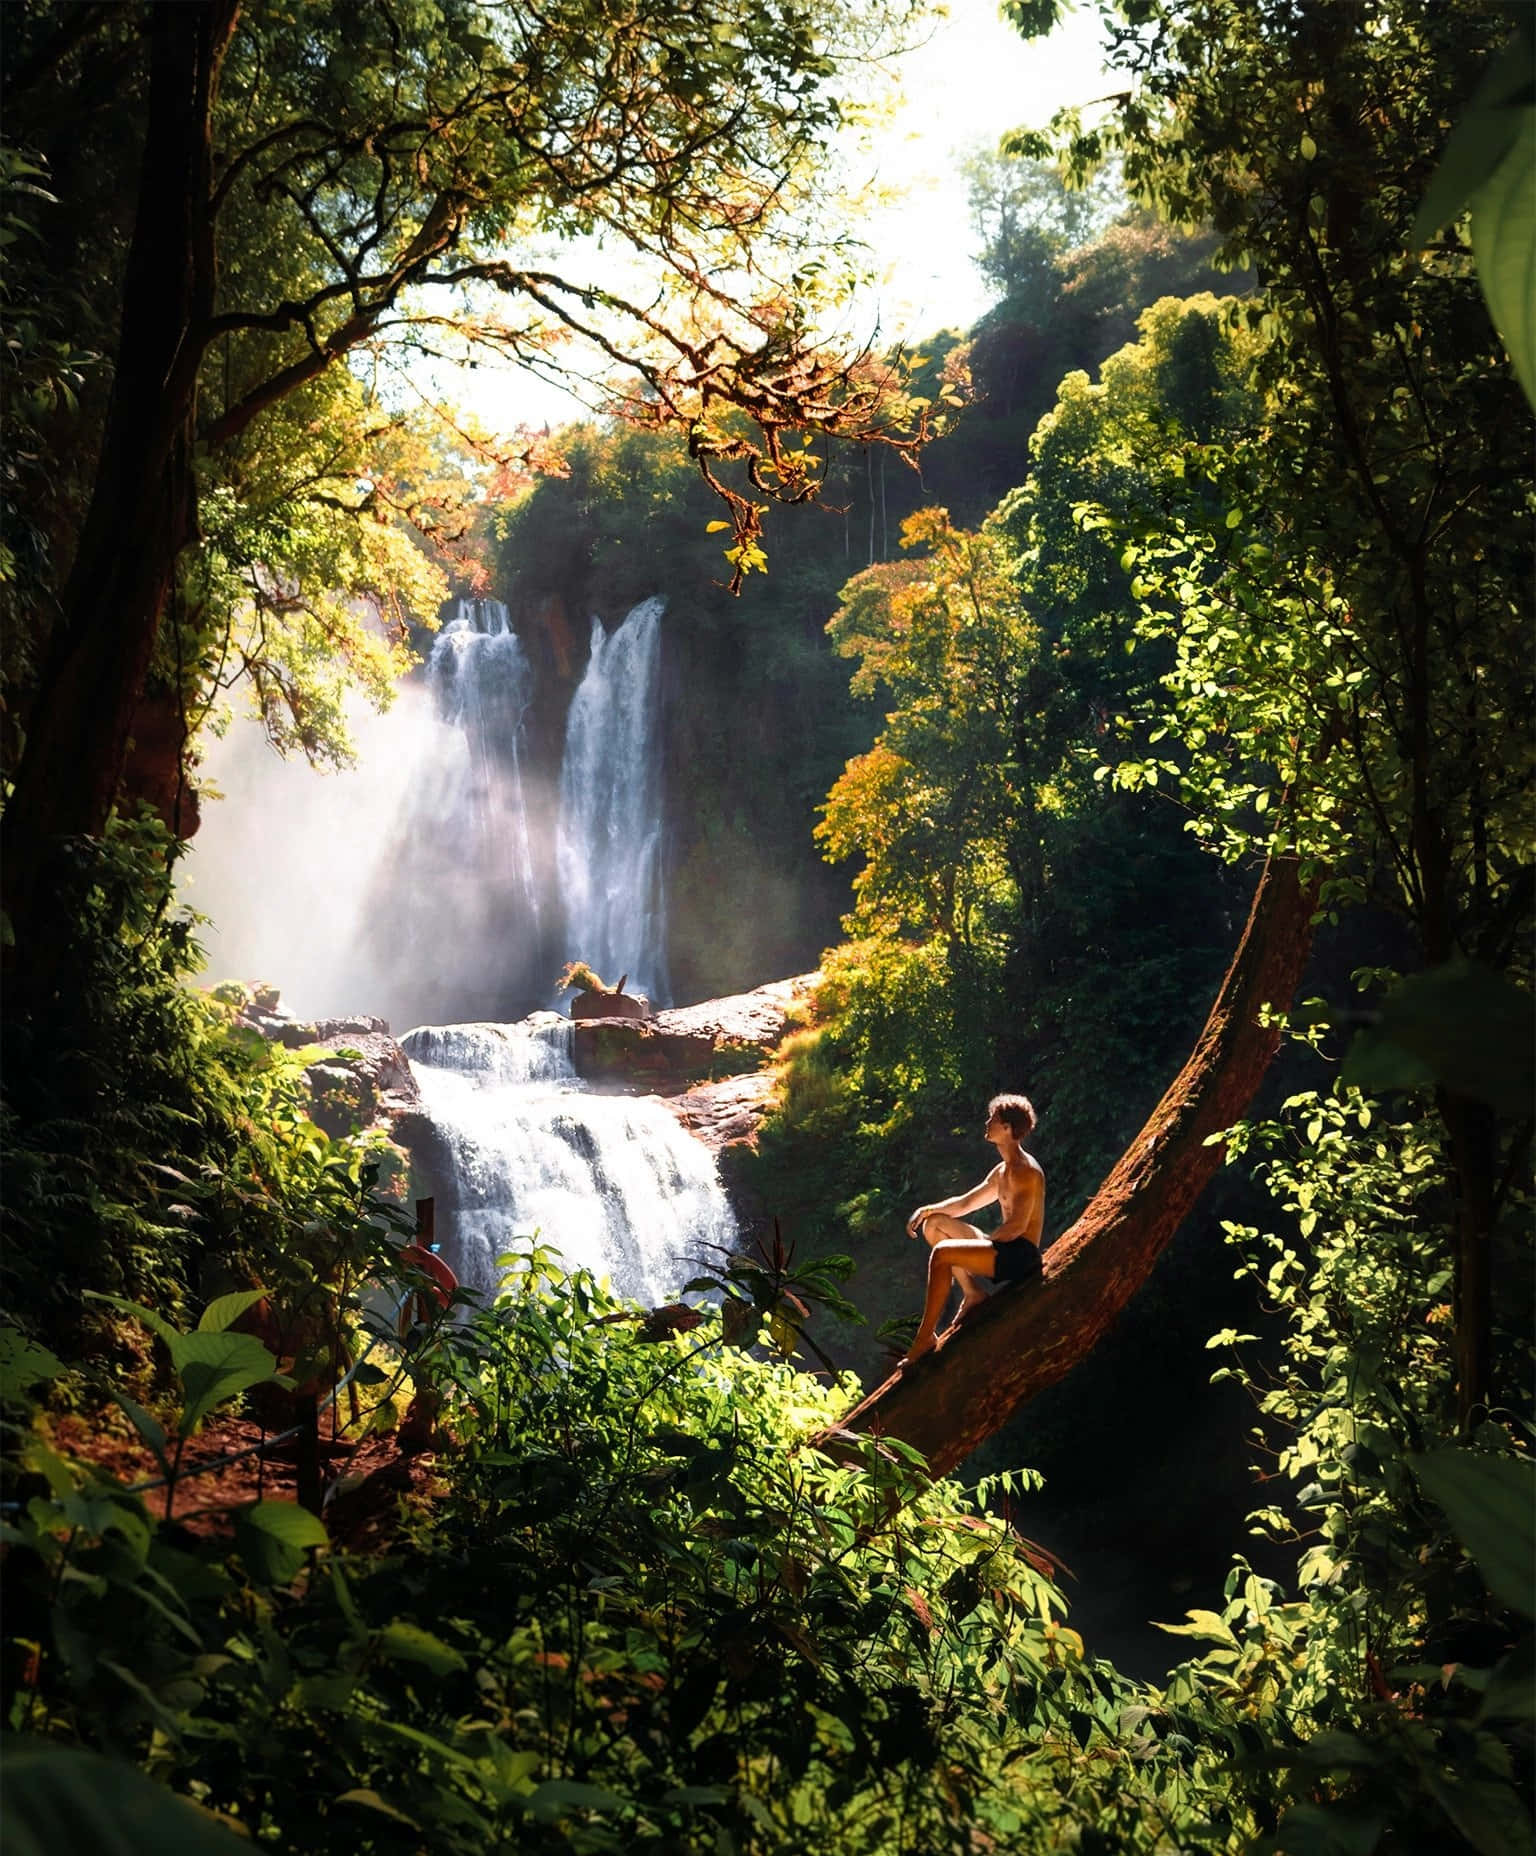 Einluftbild Der Üppigen Landschaft Costa Ricas In Dem Üppigen Mittelamerikanischen Land.